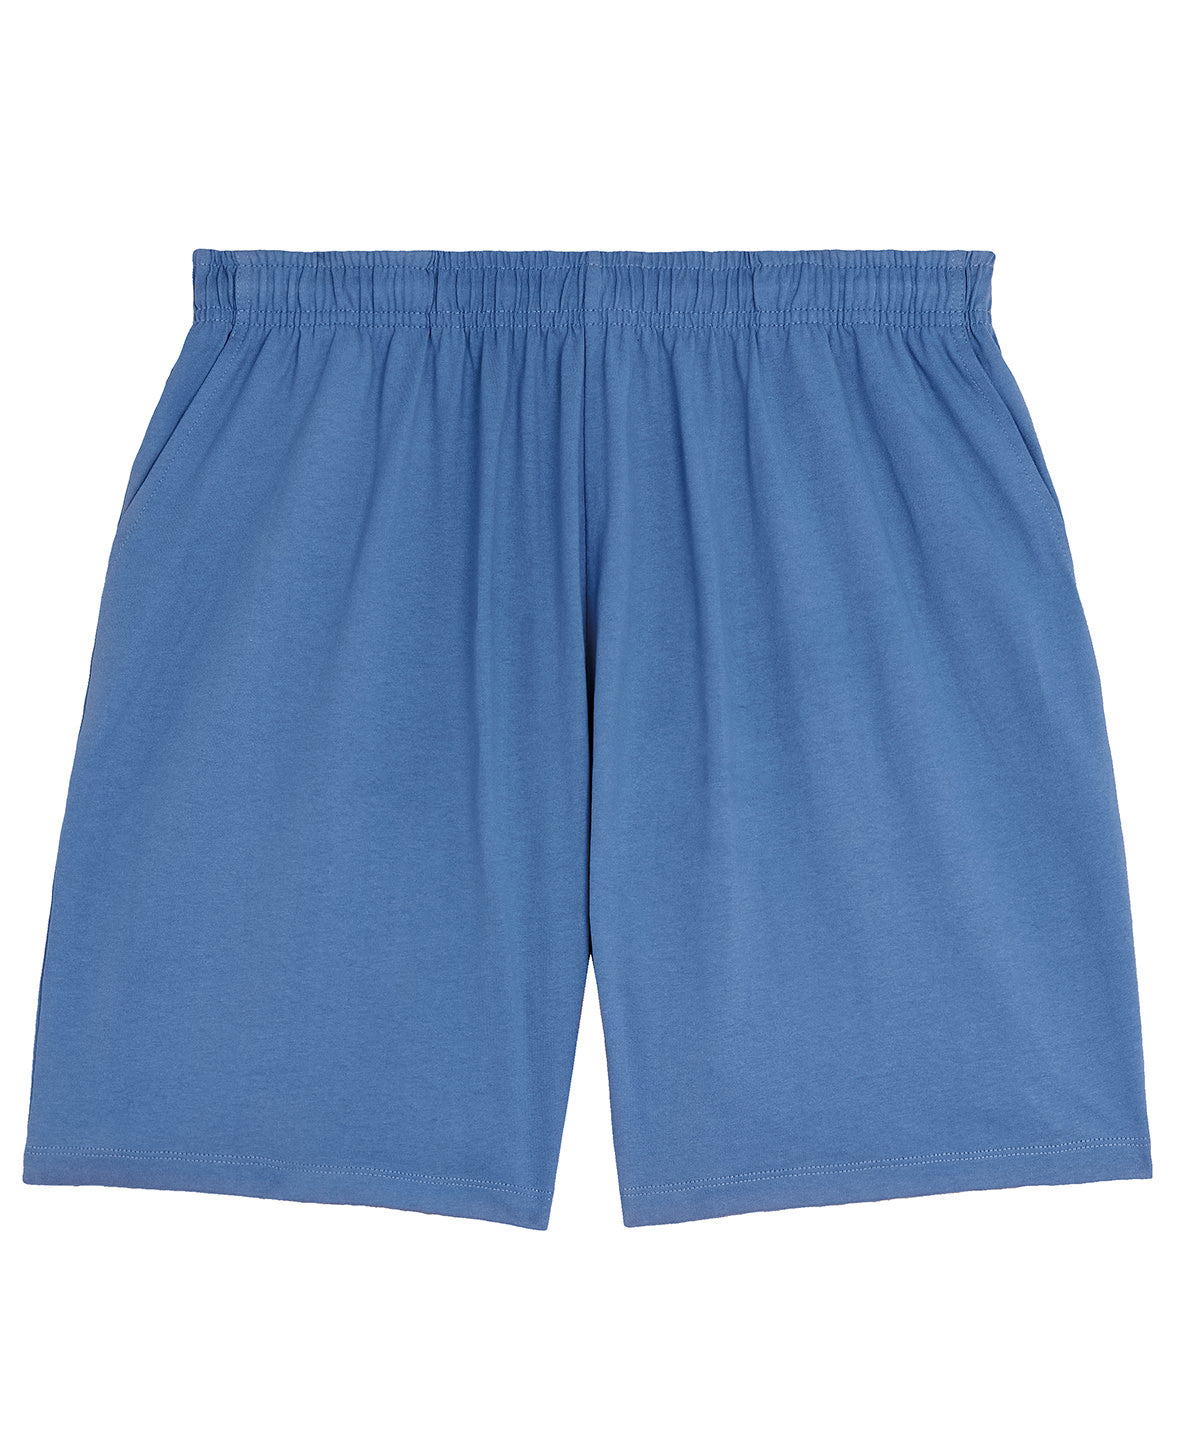 Stuttbuxur - Unisex Waker Shorts (STBU070)